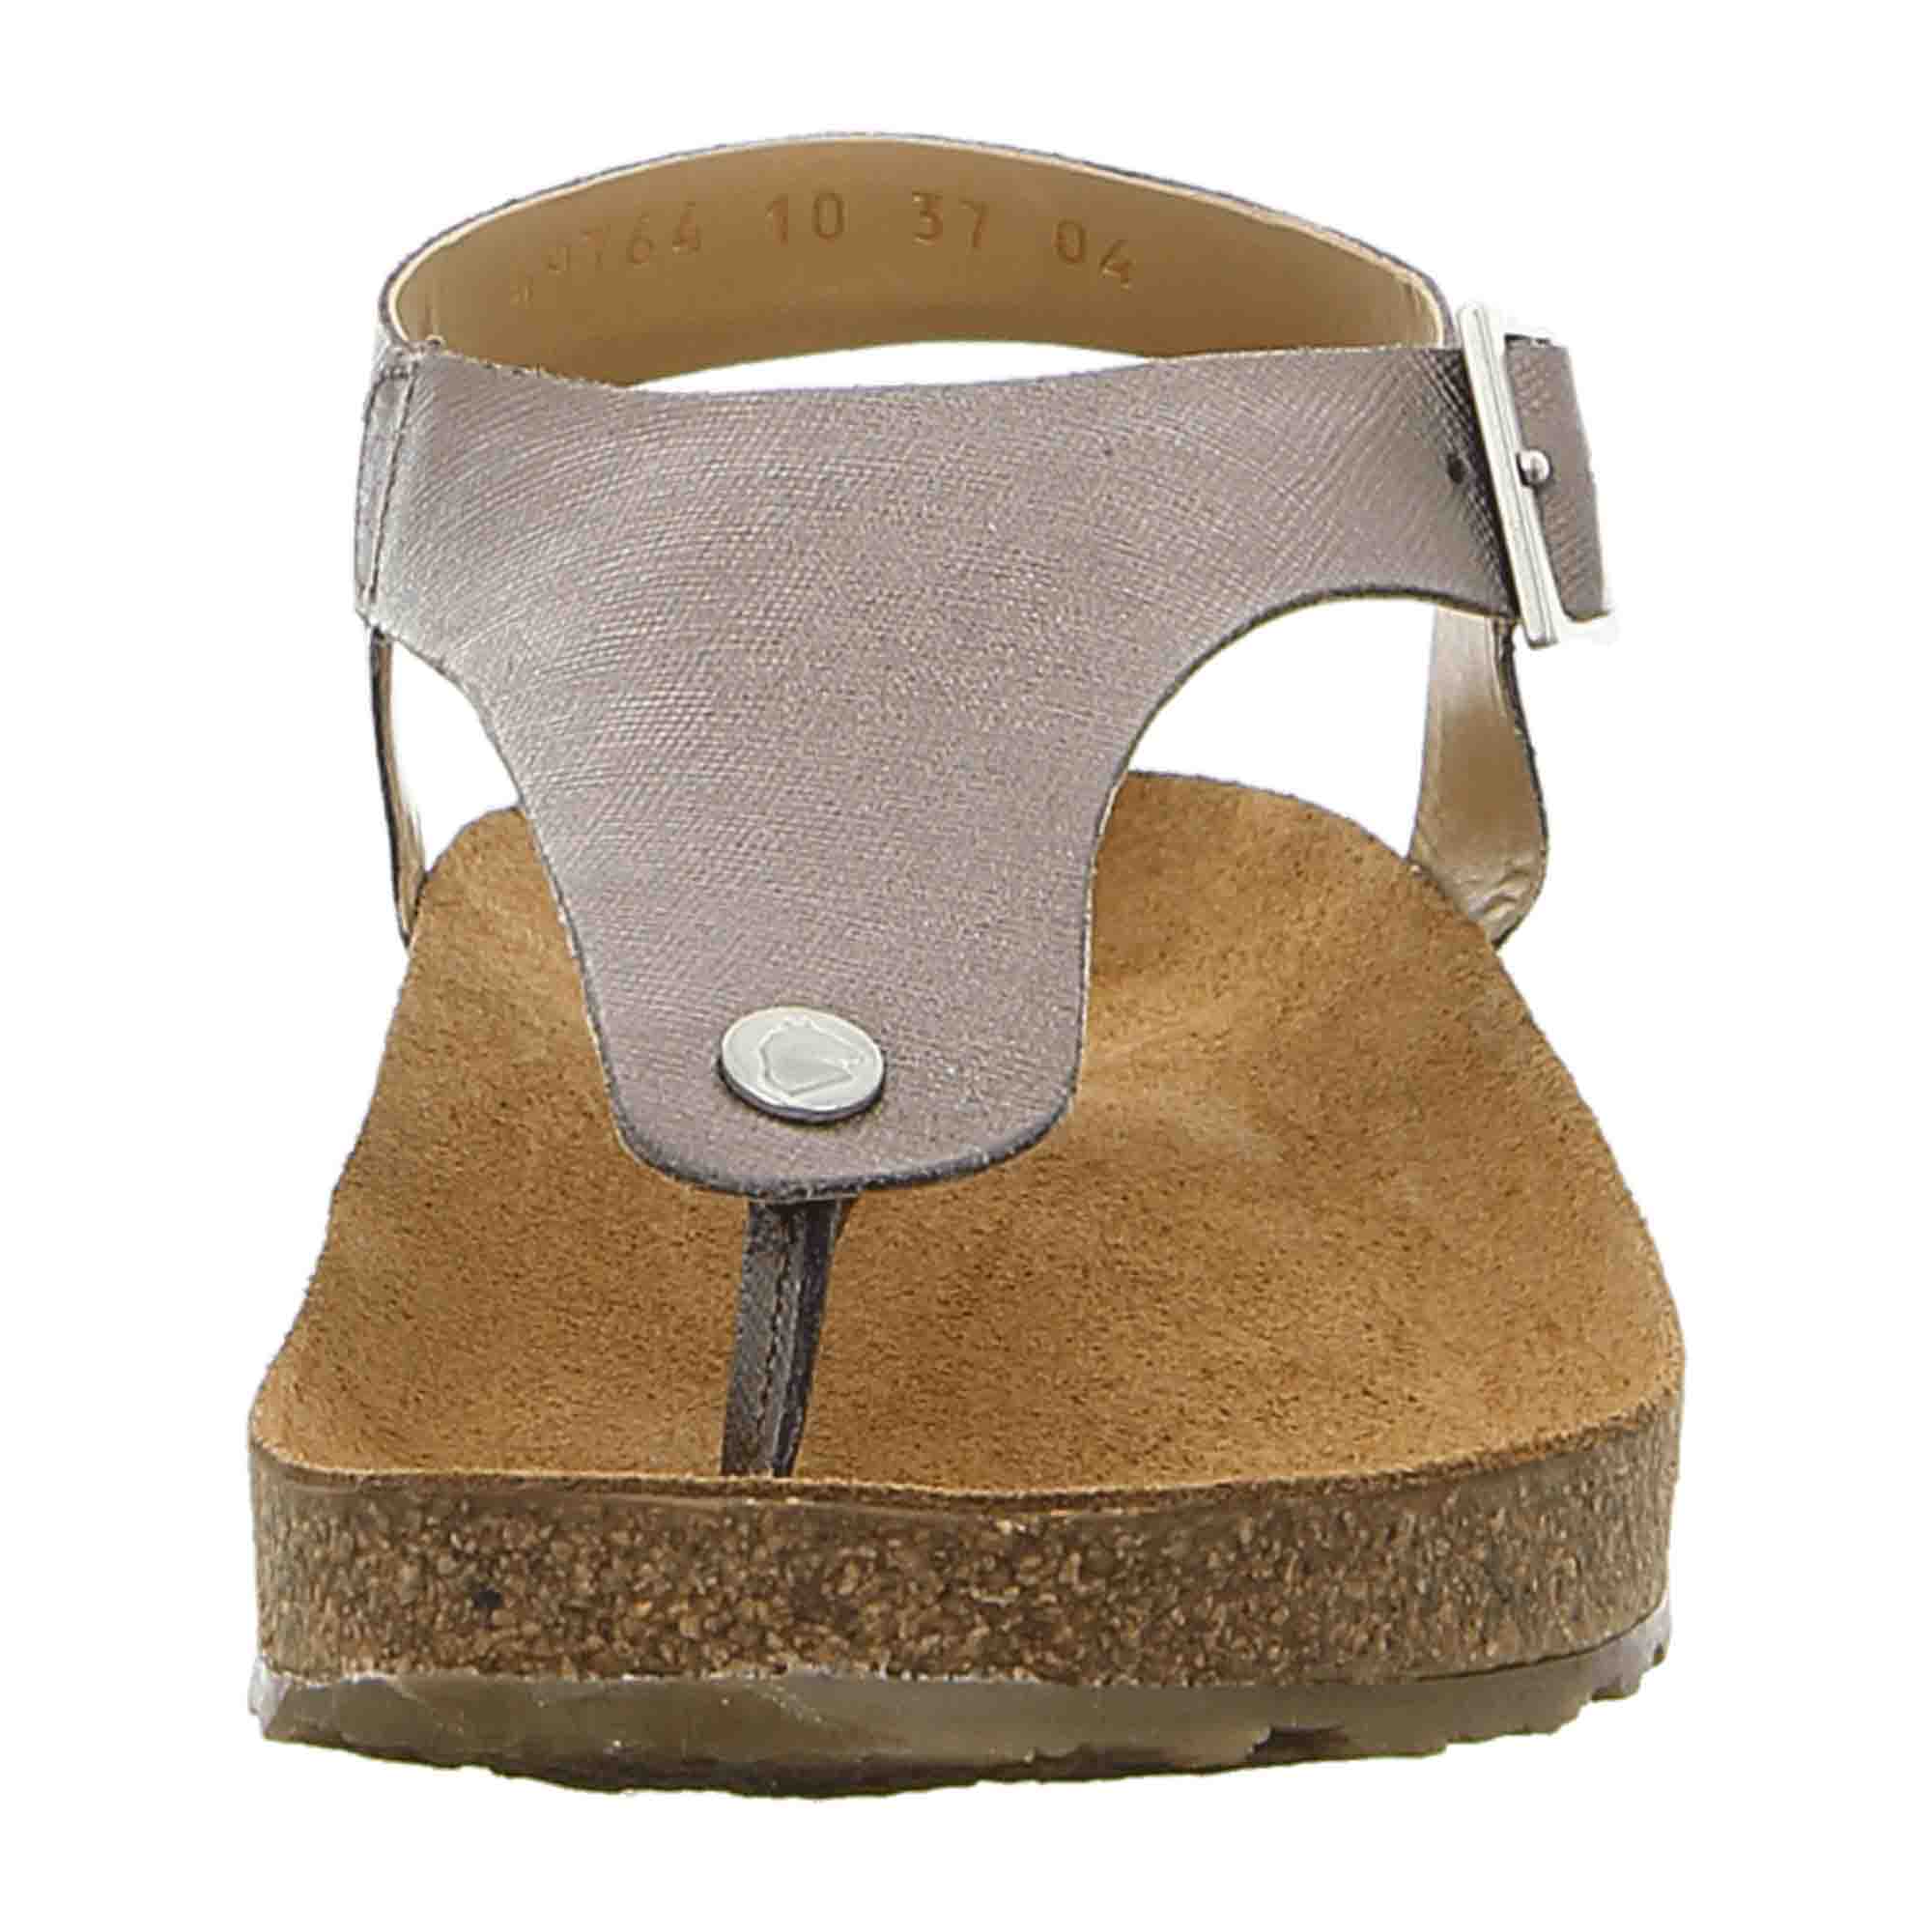 Haflinger Bio Cosima Women's Sandals - Sustainable, Stylish Gold